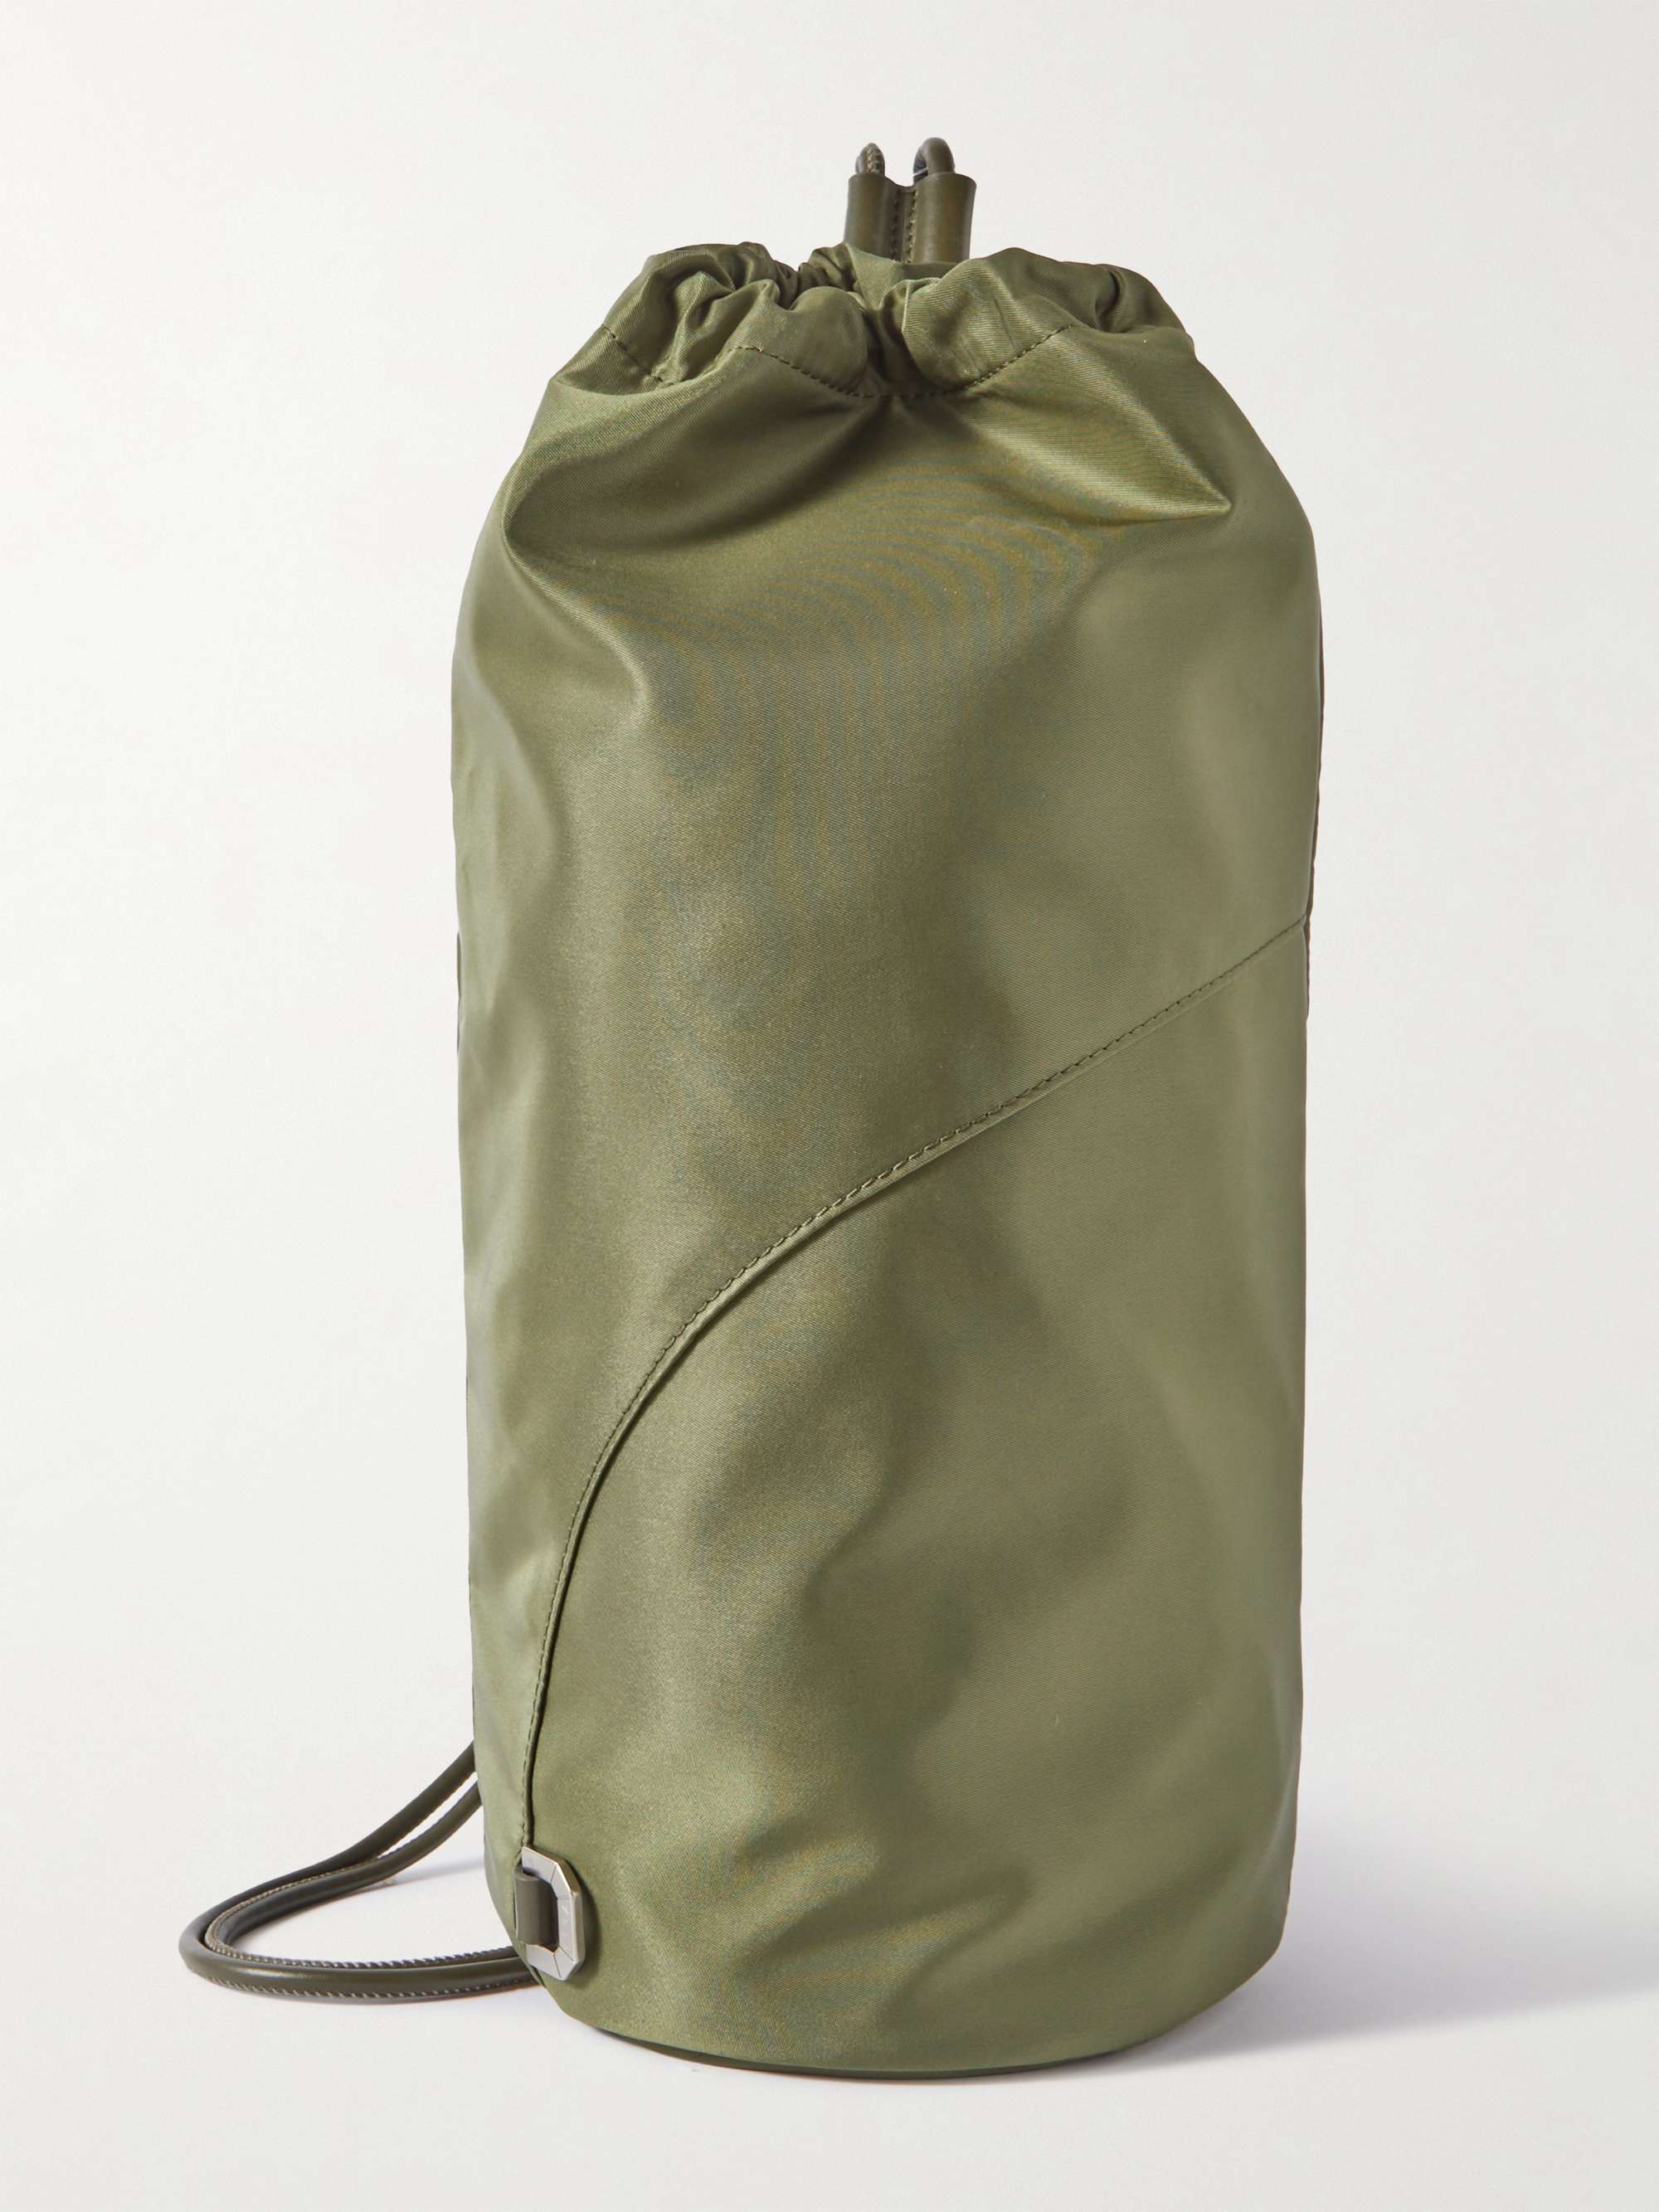 Bottega Veneta Intrecciato Green Leather Backpack 642361-V05J1-3203